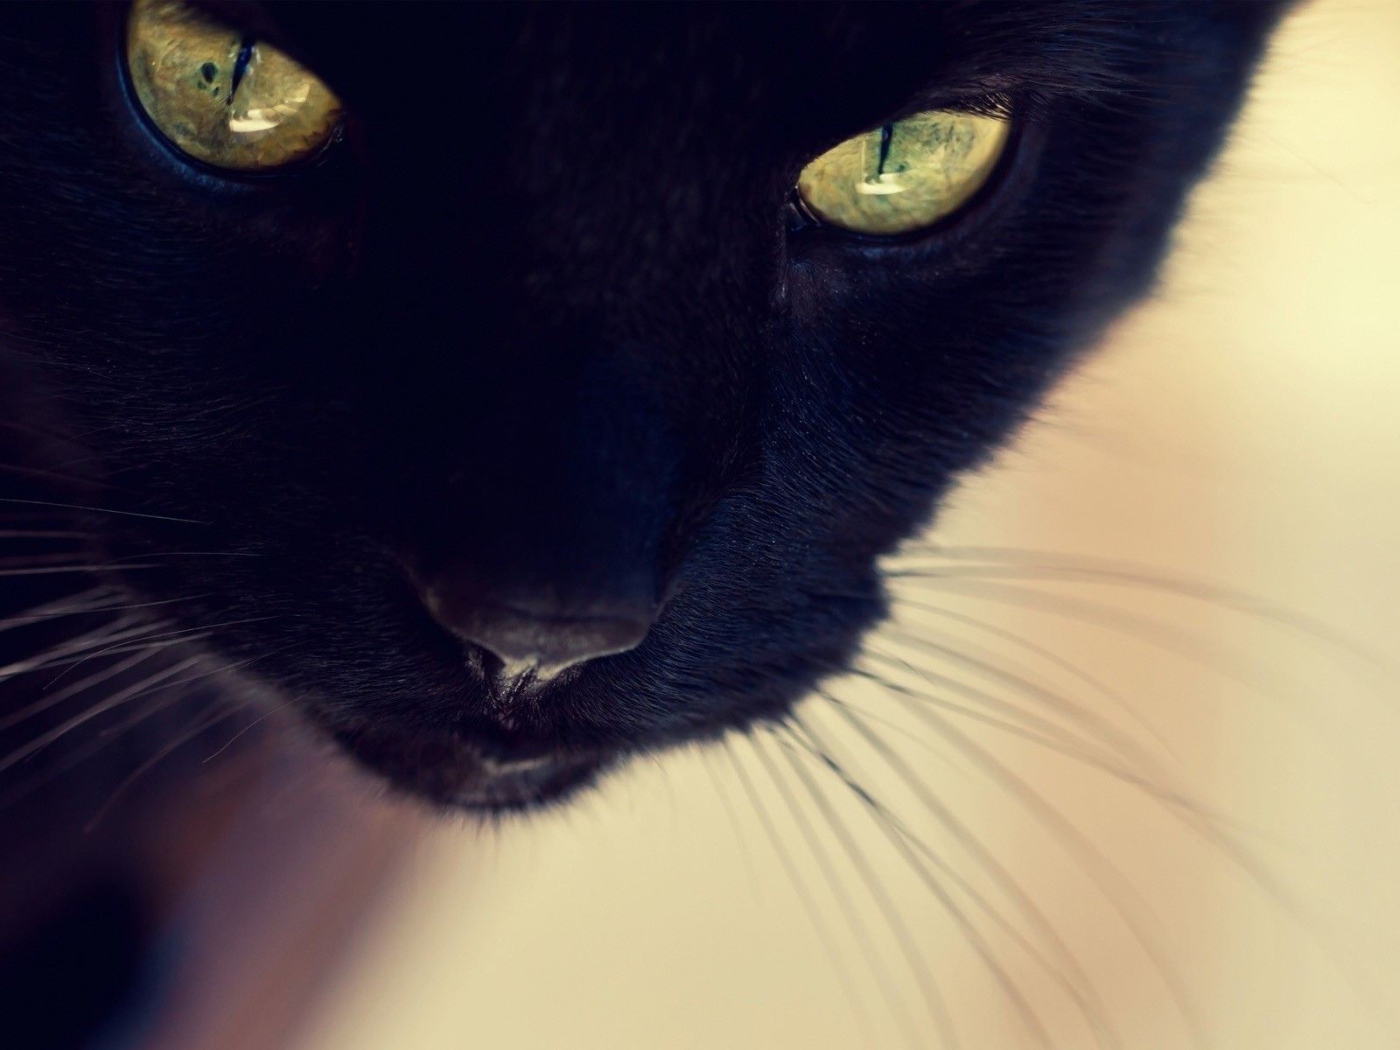 Усатый чёрный кот крупным планом